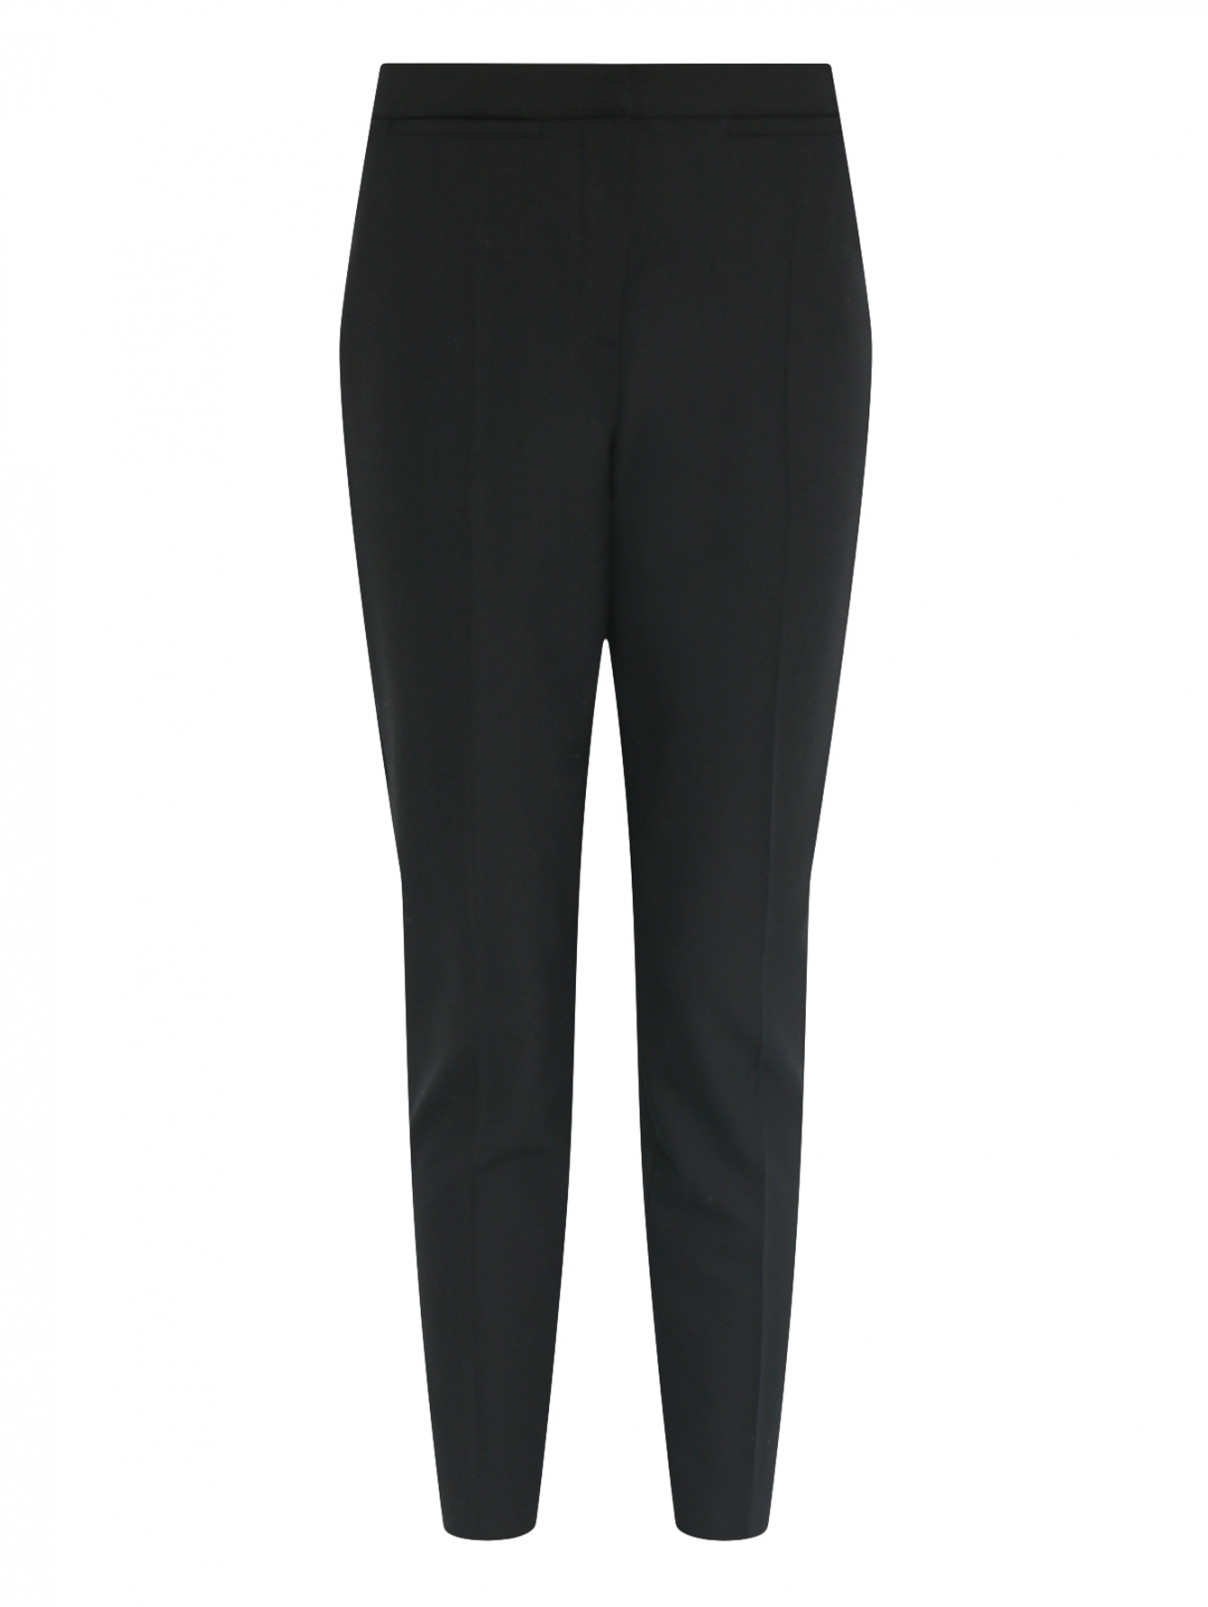 Укороченные брюки со стрелками Moschino Boutique  –  Общий вид  – Цвет:  Черный